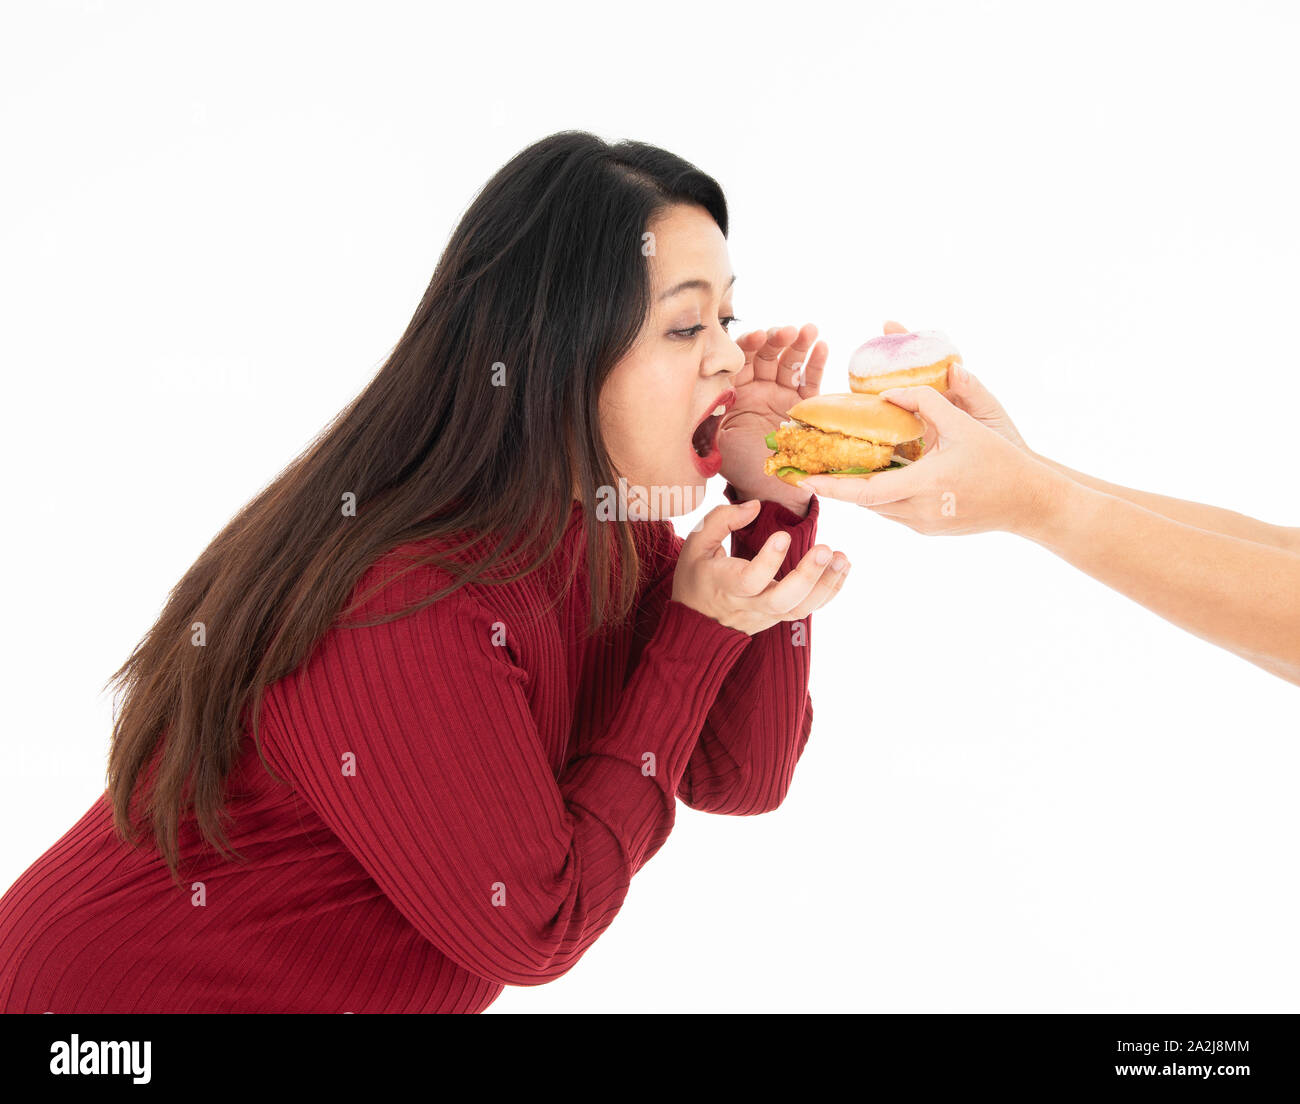 Eine junge fette Frau in Rot gekleidet war Essen einen Hamburger und Krapfen, die übergeben wurde. Sie ist hungrig und ihr Lieblingsessen. Gesundes Konzept. Stockfoto